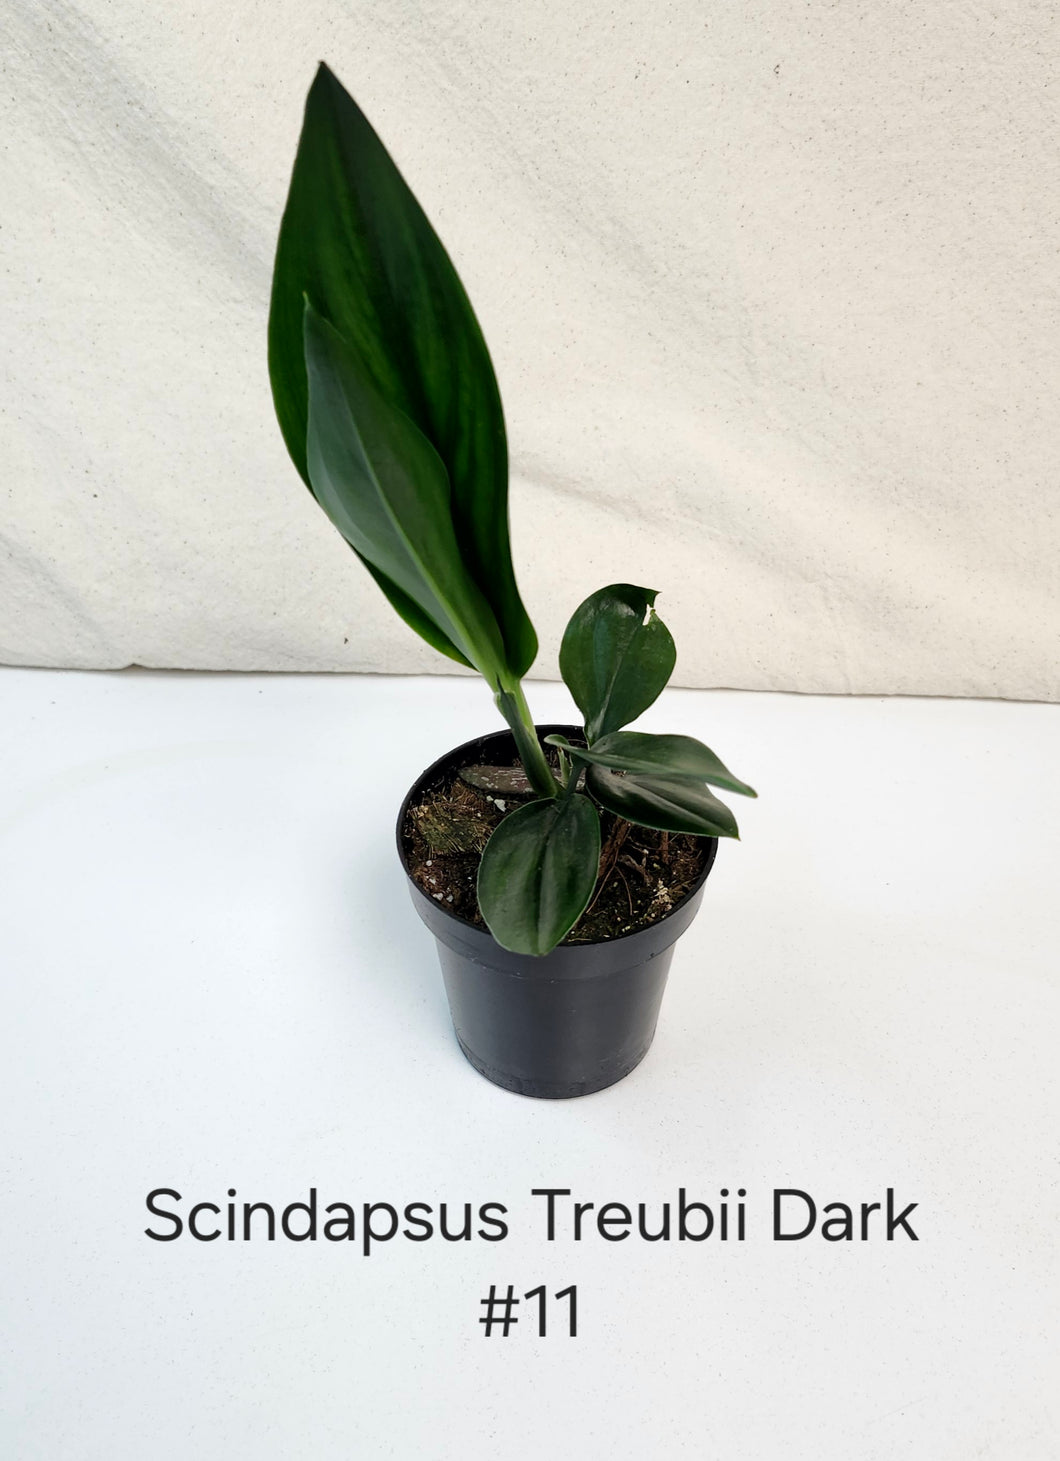 Scindapsus Treubii Dark Form #11